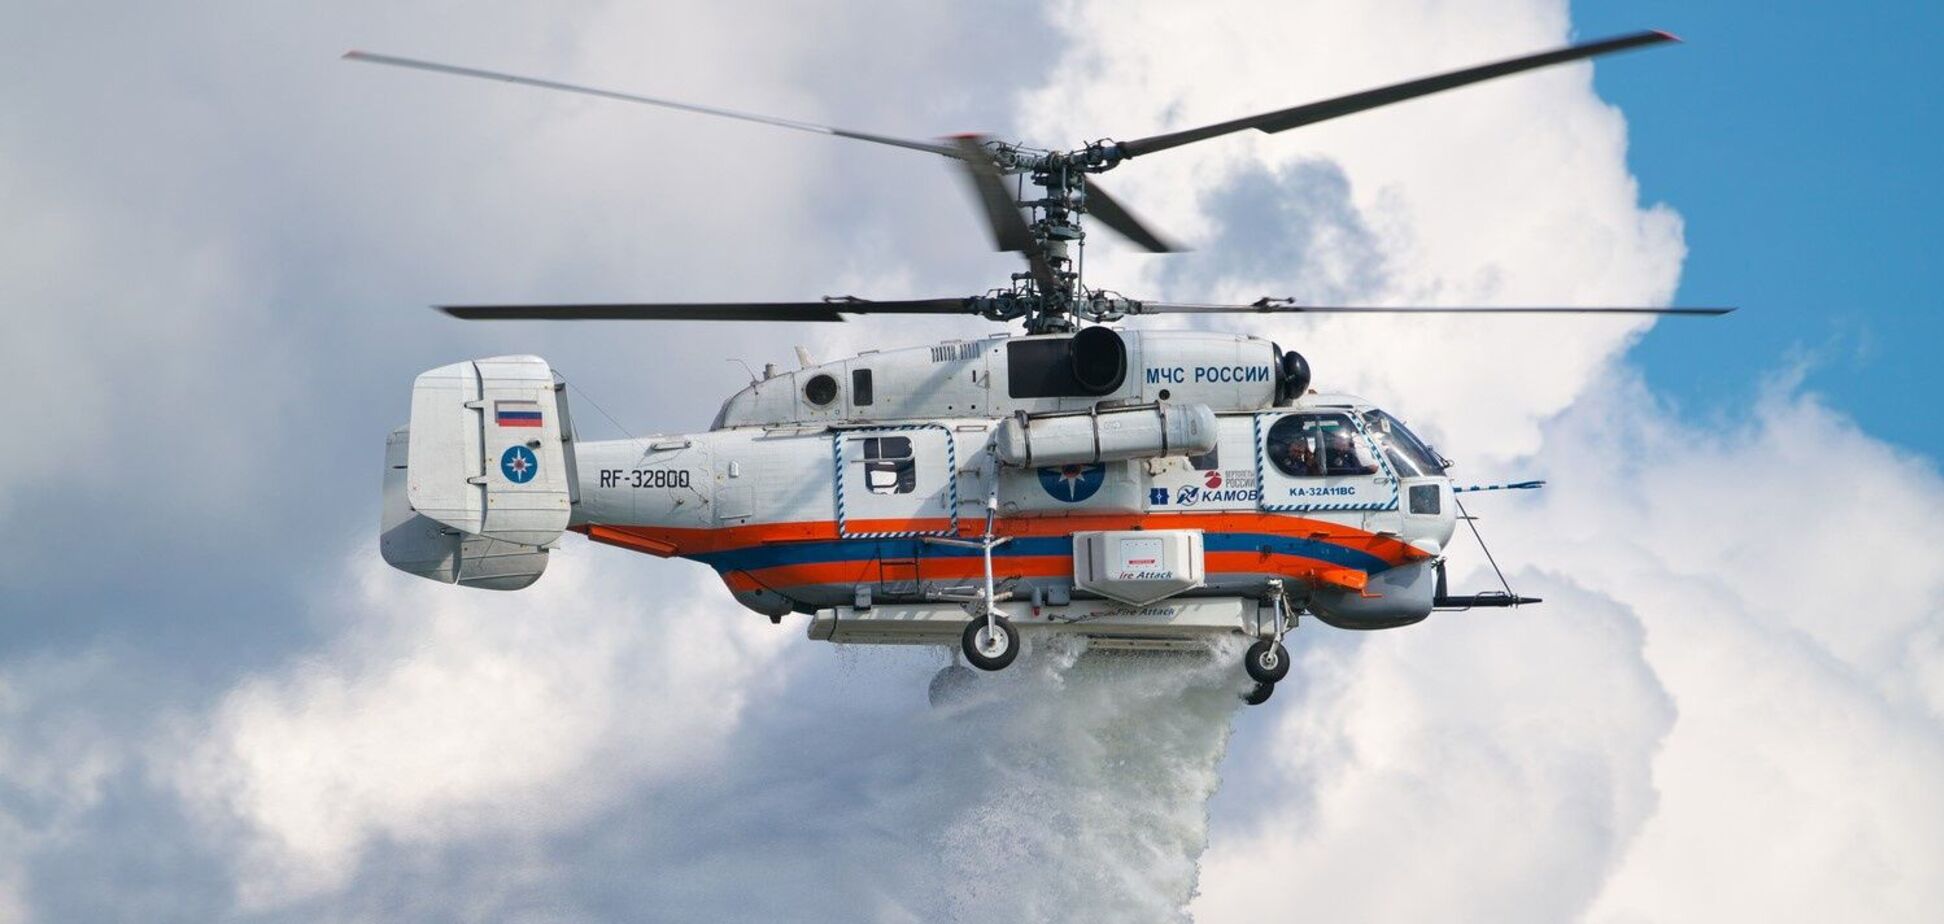 ГУР уничтожило российский вертолет Ка-32 прямо на аэродроме в Москве. Видео операции